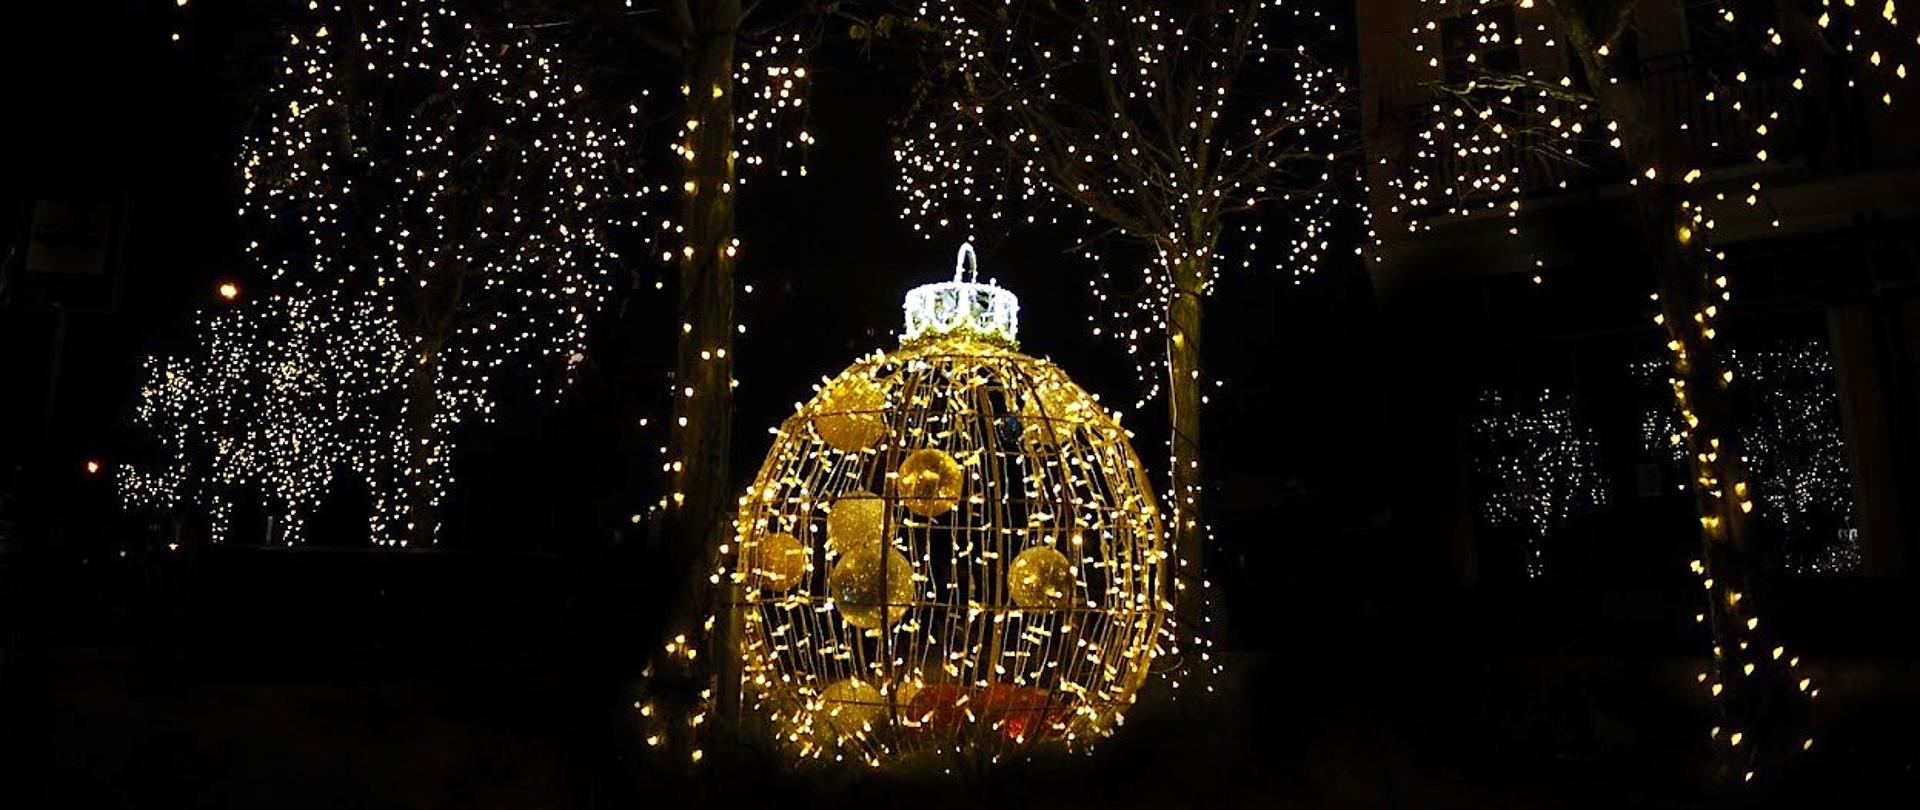 Zdjęcie nocne plenerowej instalacji 3d - bombka choinkowa oświetlona lampkami w tonacji żółtej, w tle drzewa także oświetlone lampkami choinkowymi.